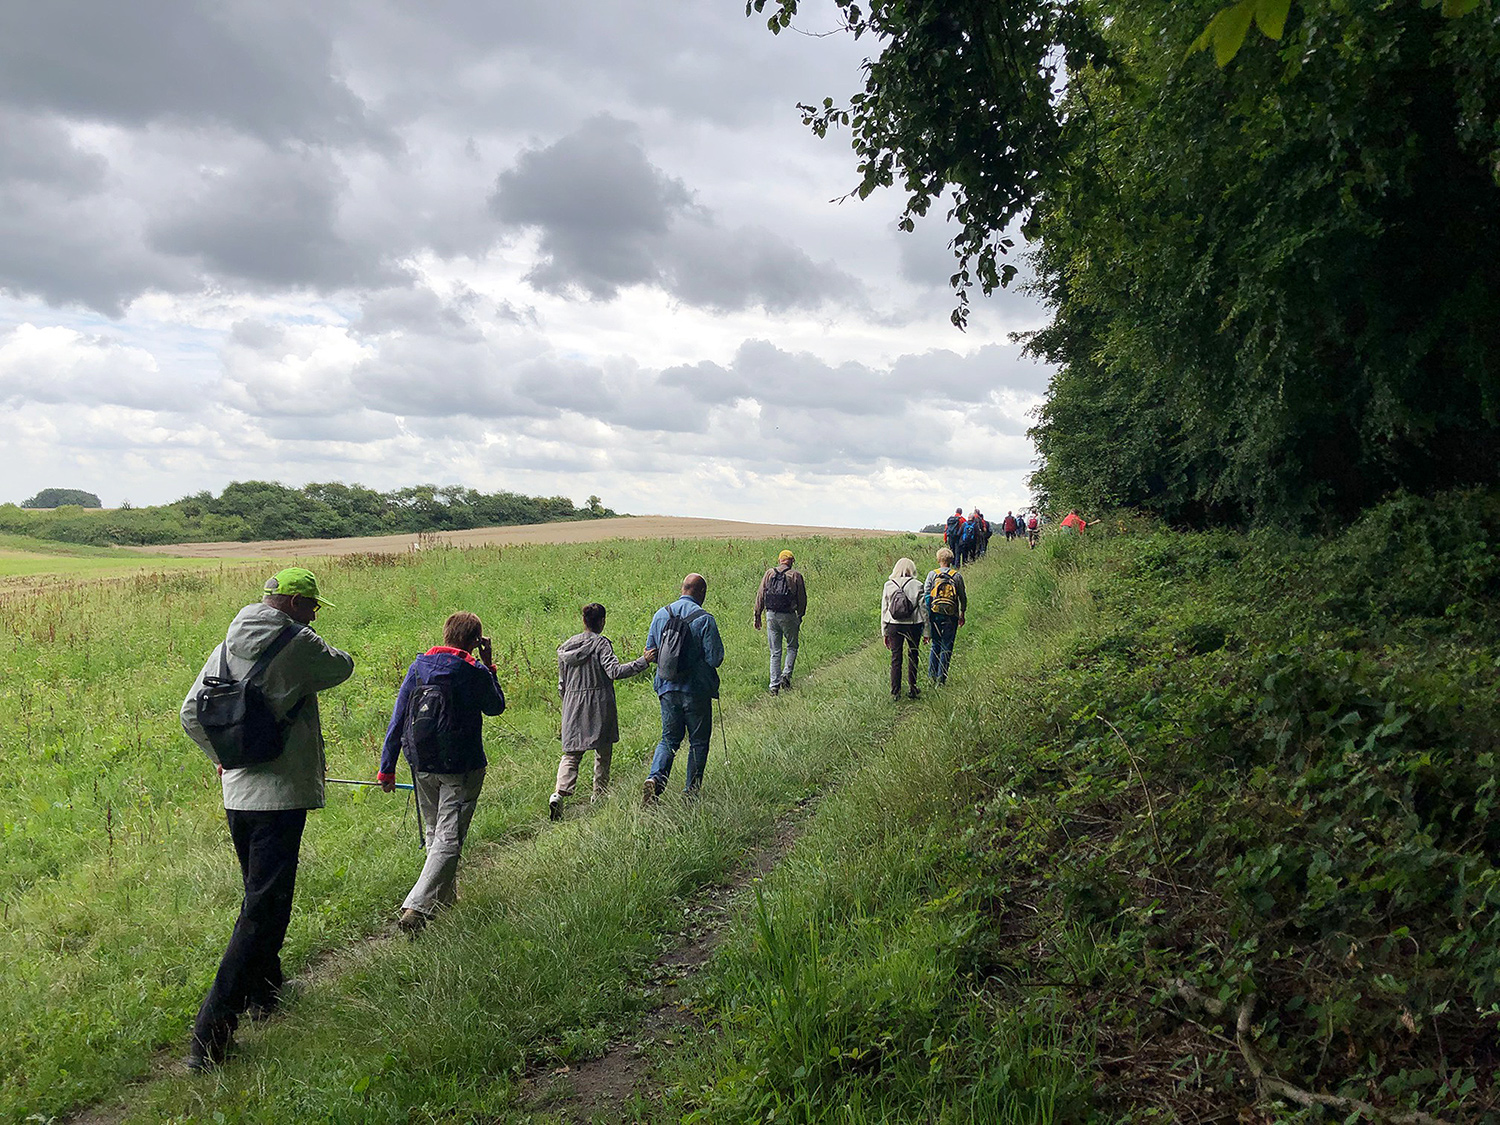 13 Personen mit rucksäcken wandern über einen naturbelassenen landwirtschaftlichen Feldweg in richtung Horizont. Daneben sind Ackerflächen, Sträucher und Laubwald zu sehen